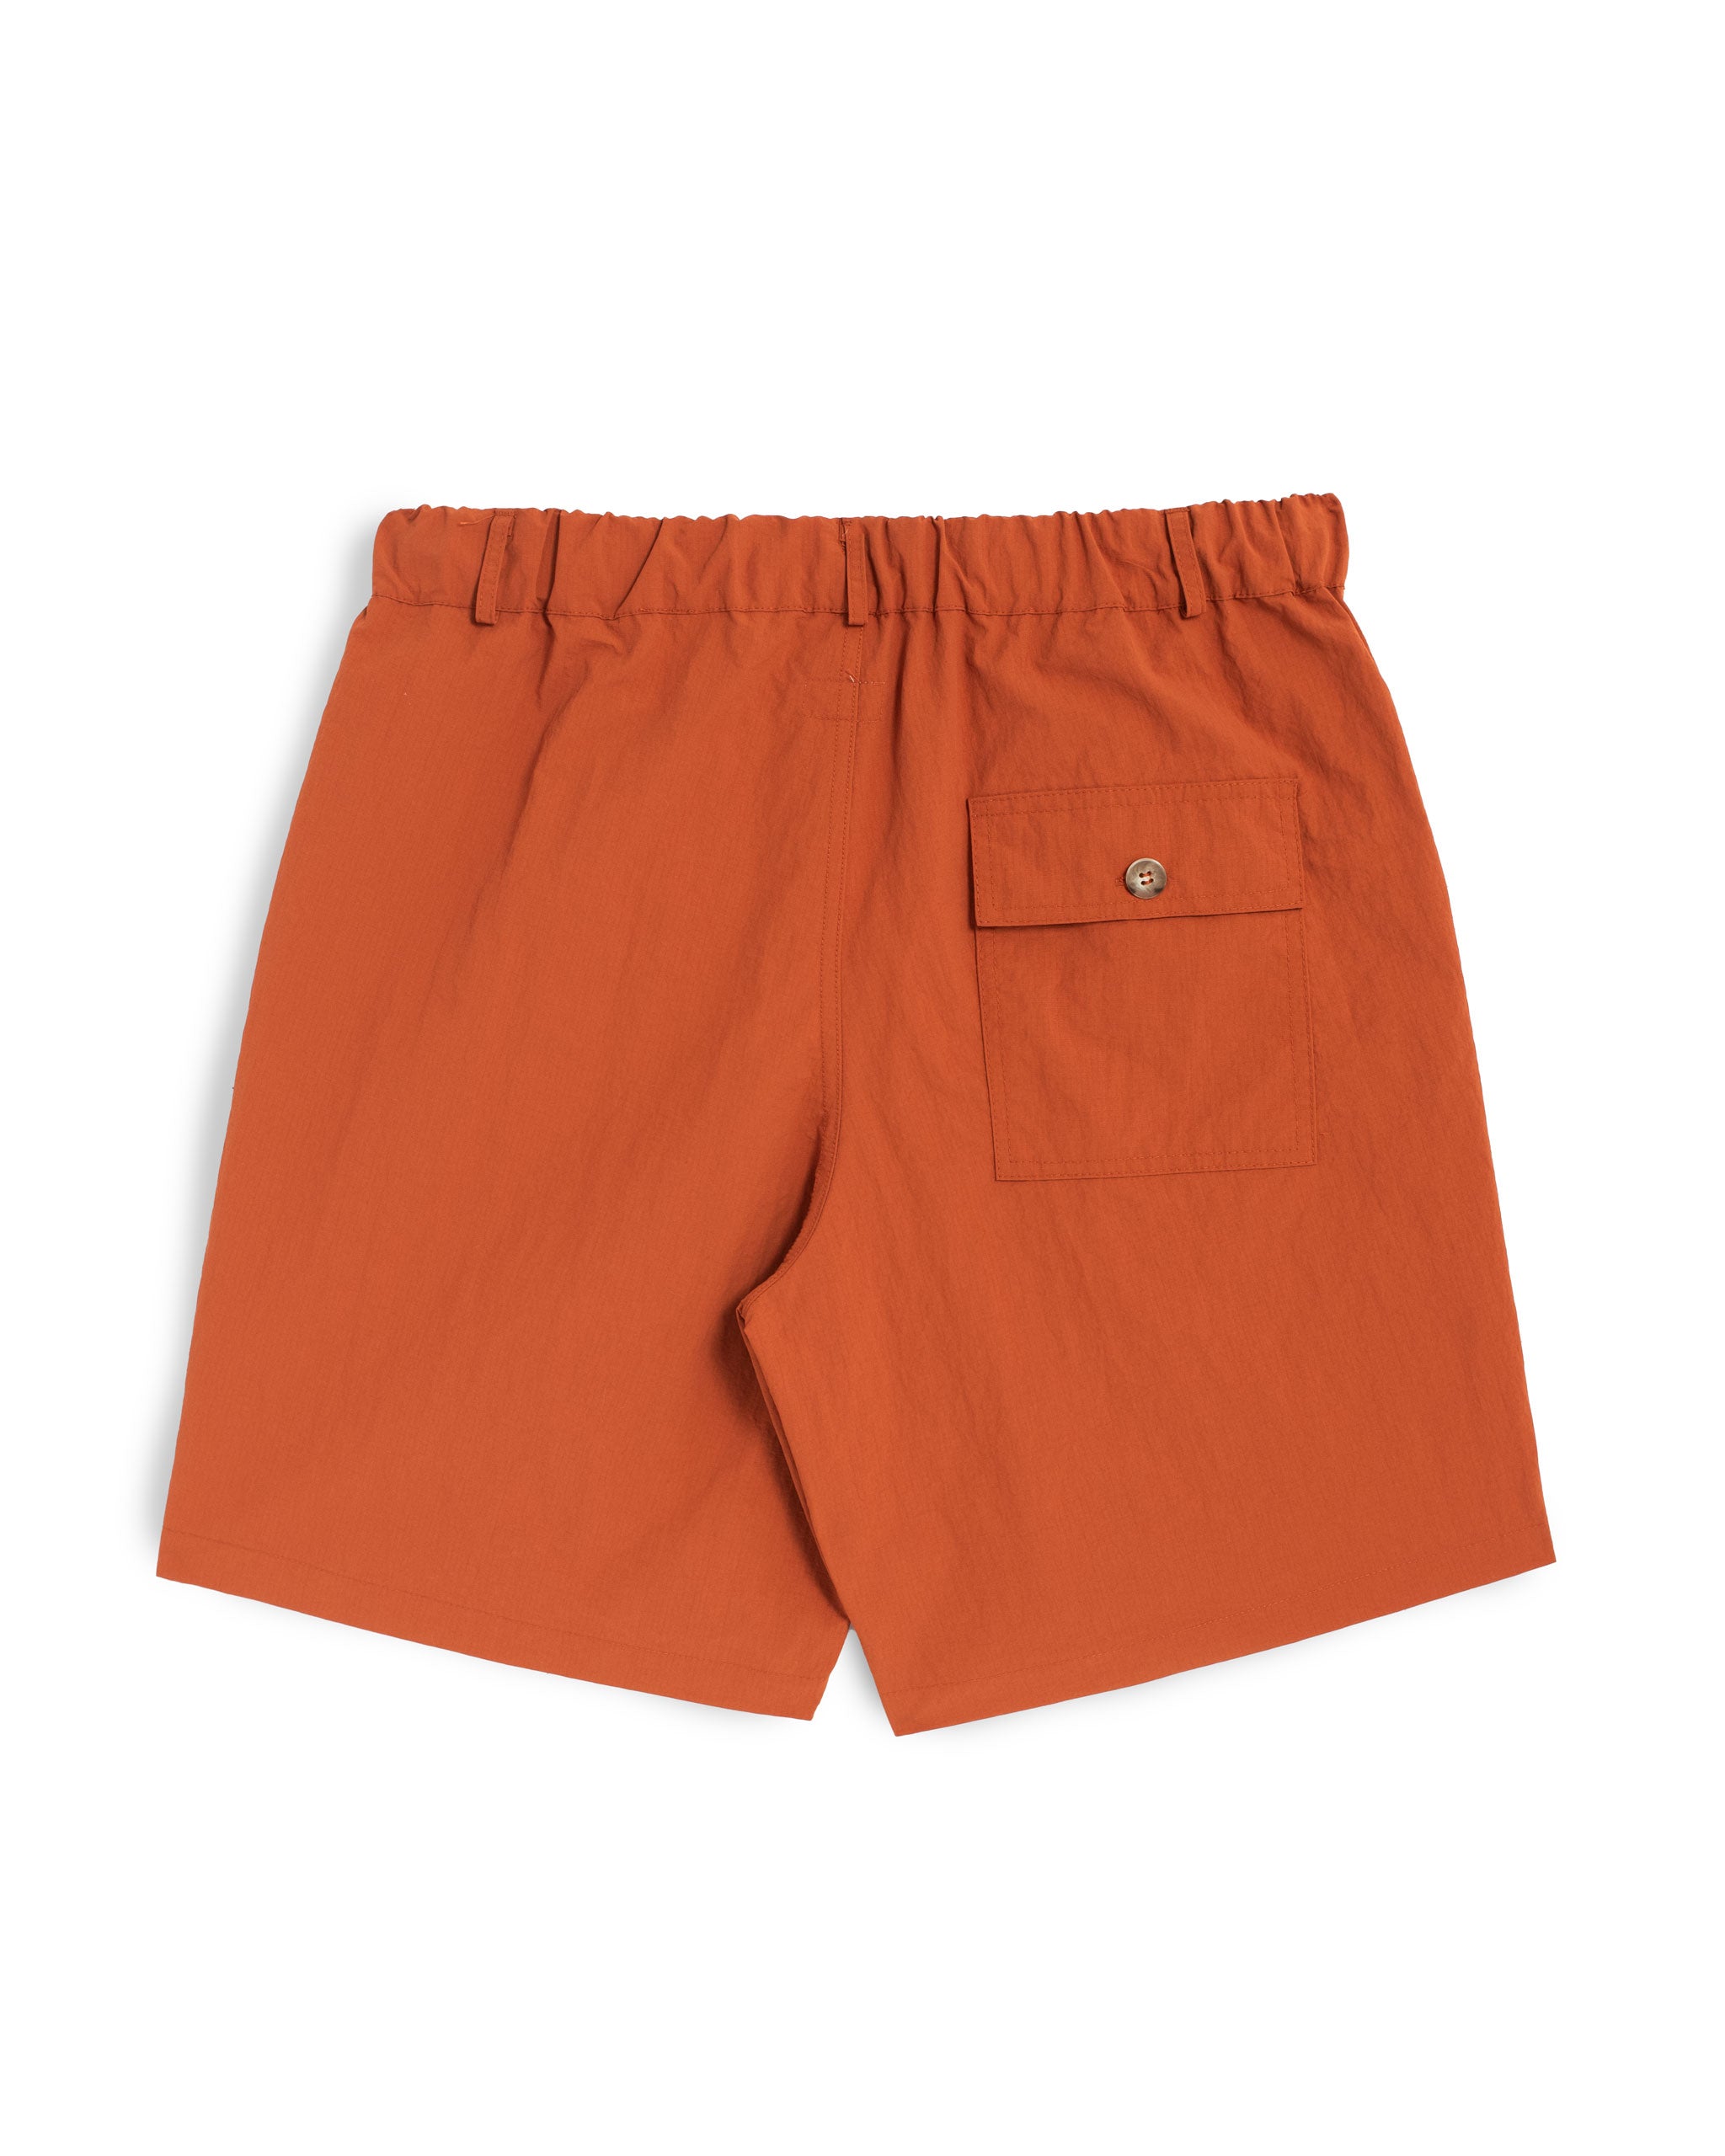 Solid Orange nylon utility with elasticized waist shorts back shot